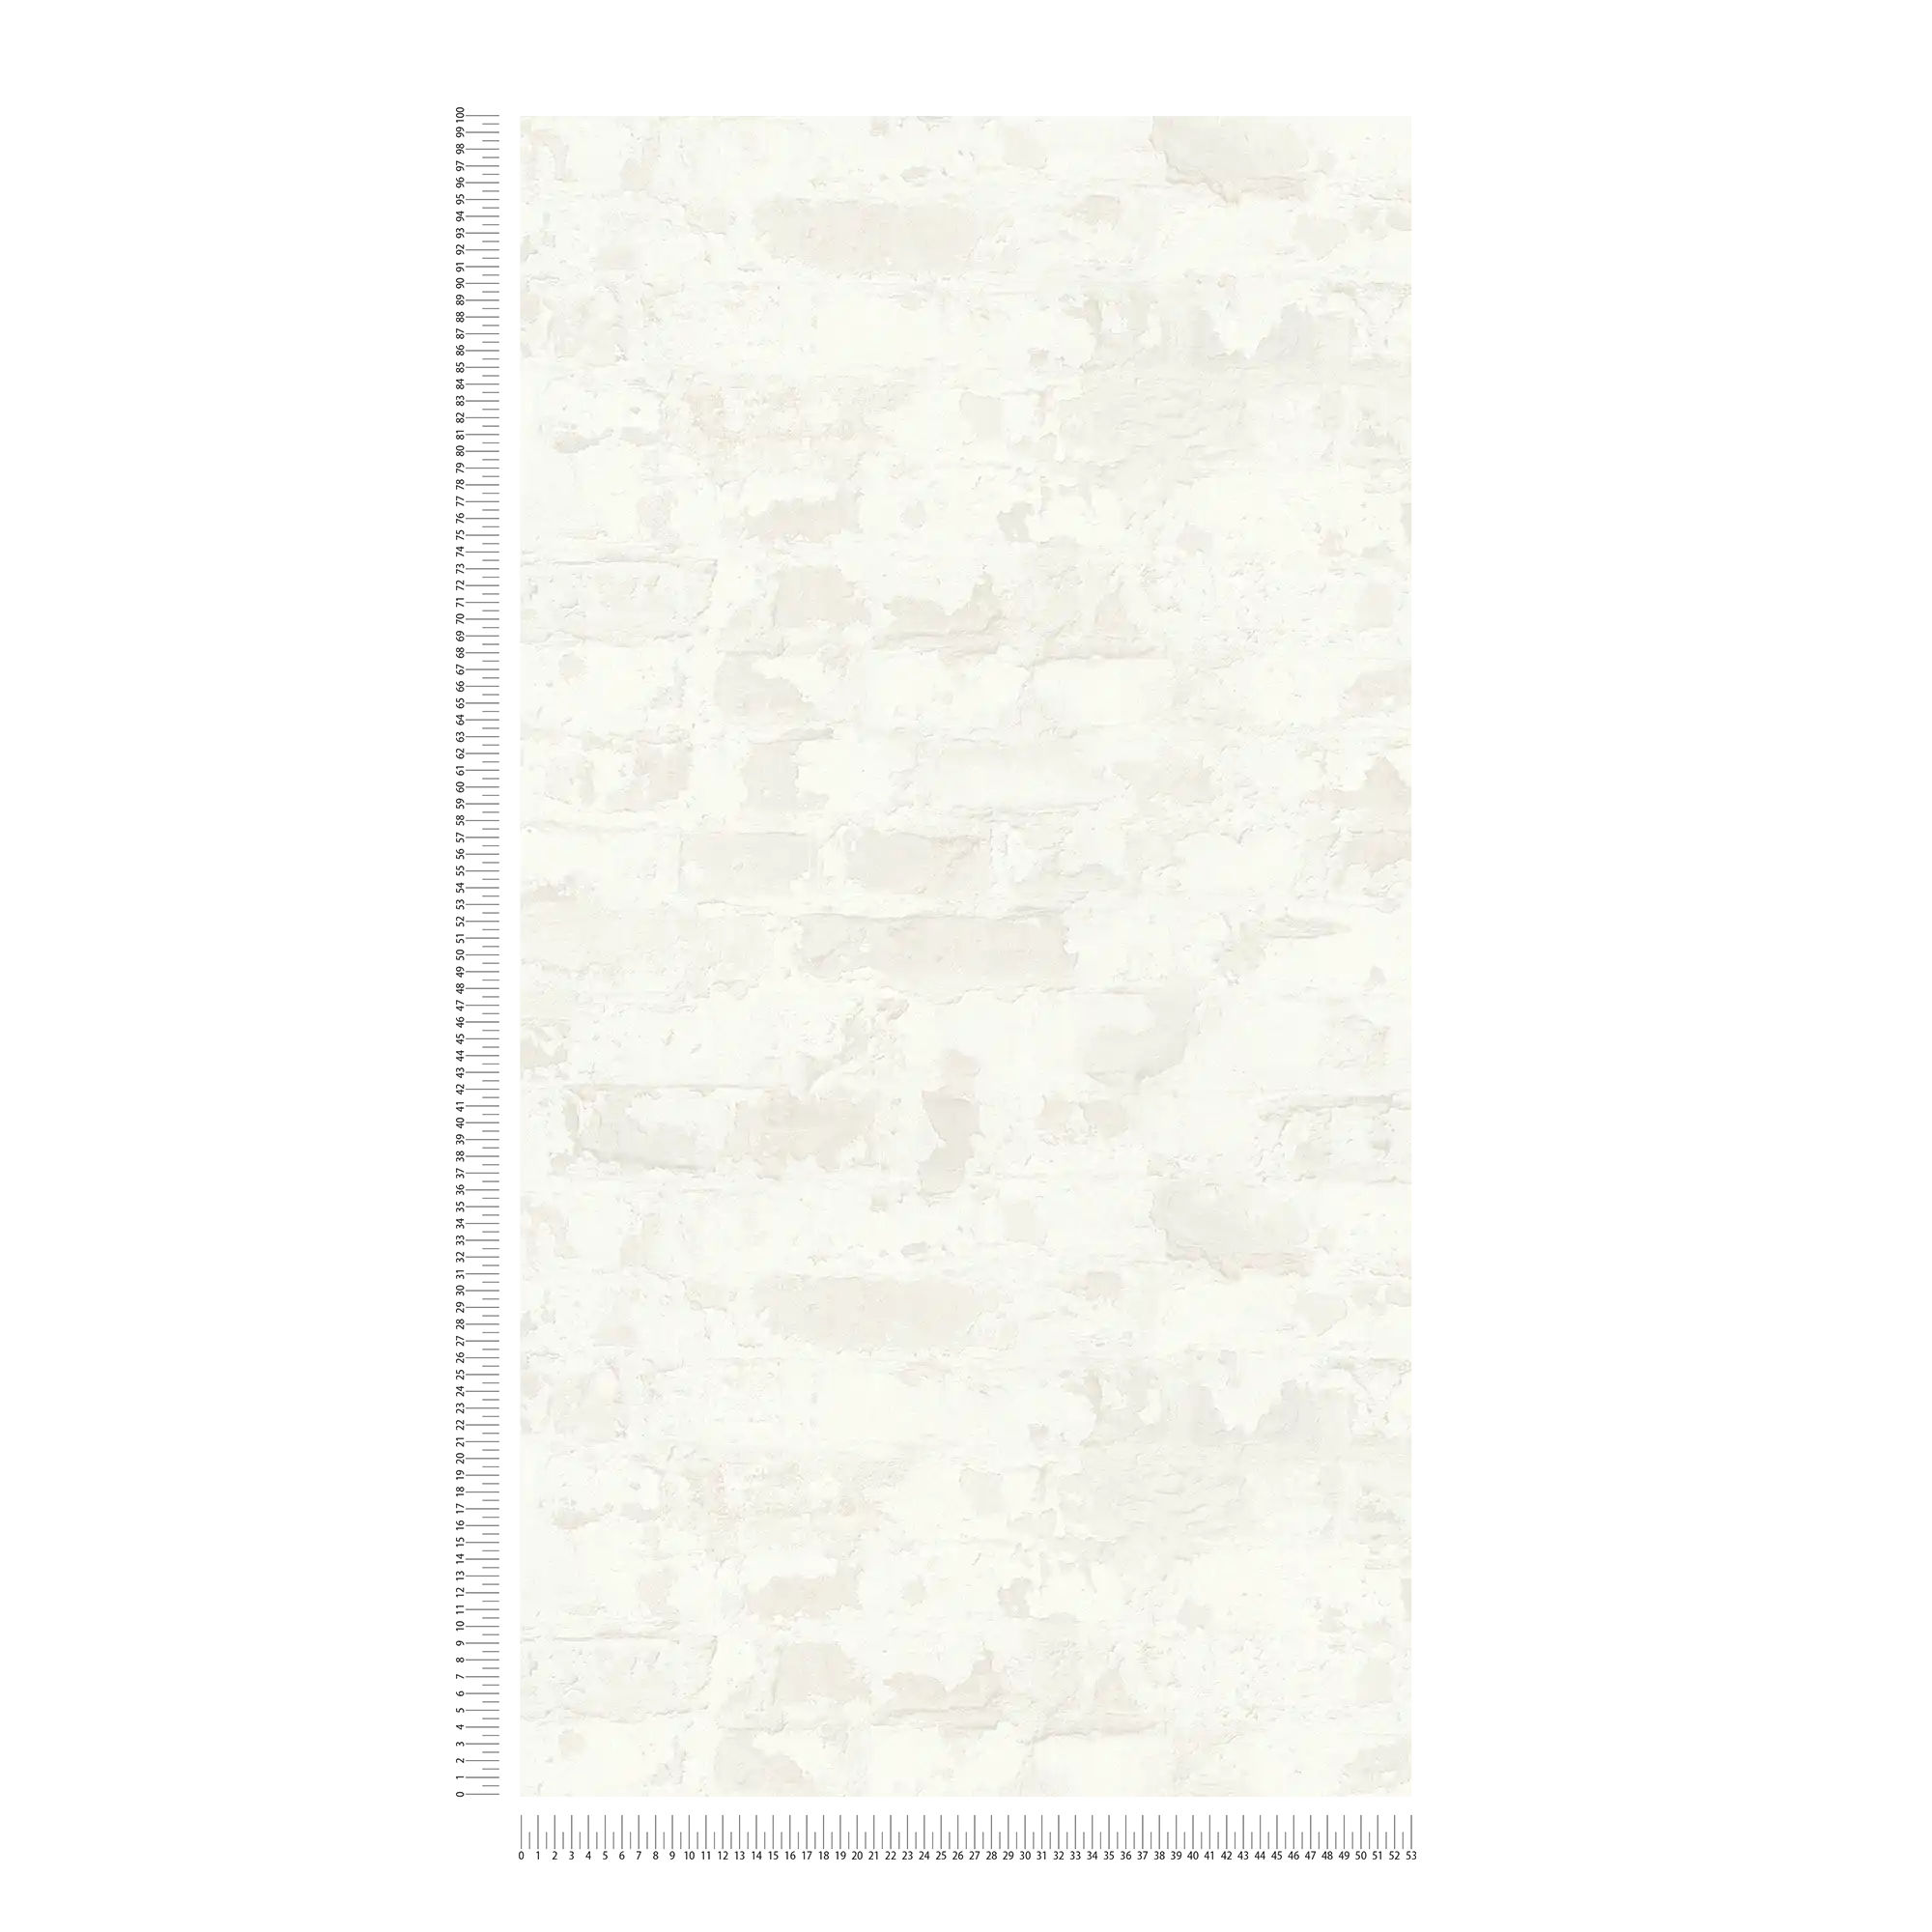             Carta da parati con mattoni in stile country - grigio, bianco
        